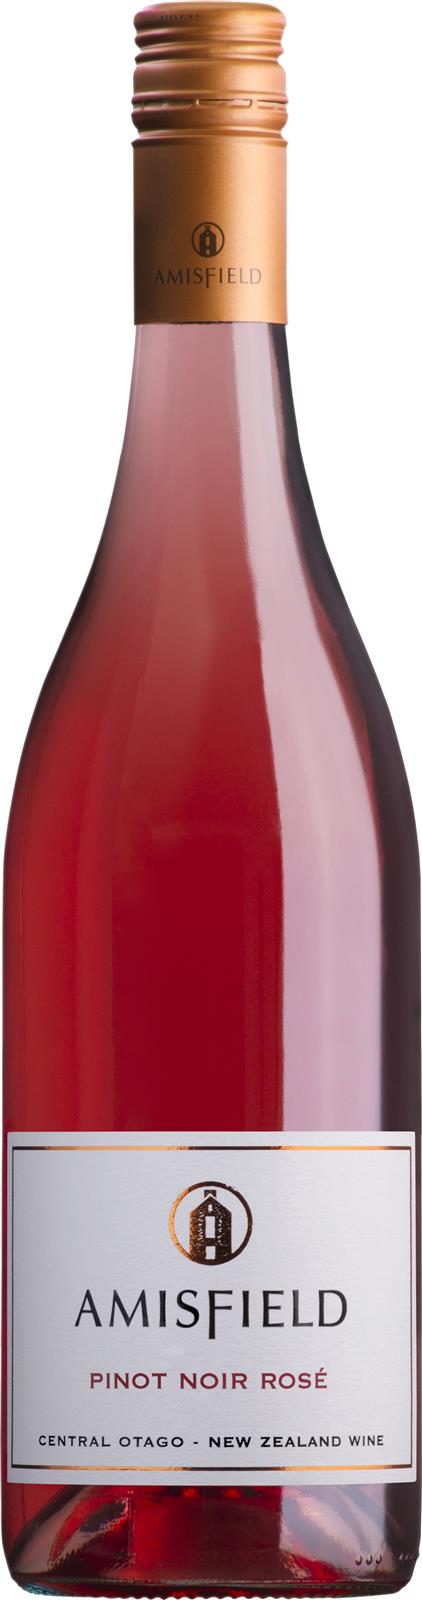 Amisfield Central Otago Pinot Noir Rosé 2020 Magnum 1.5L